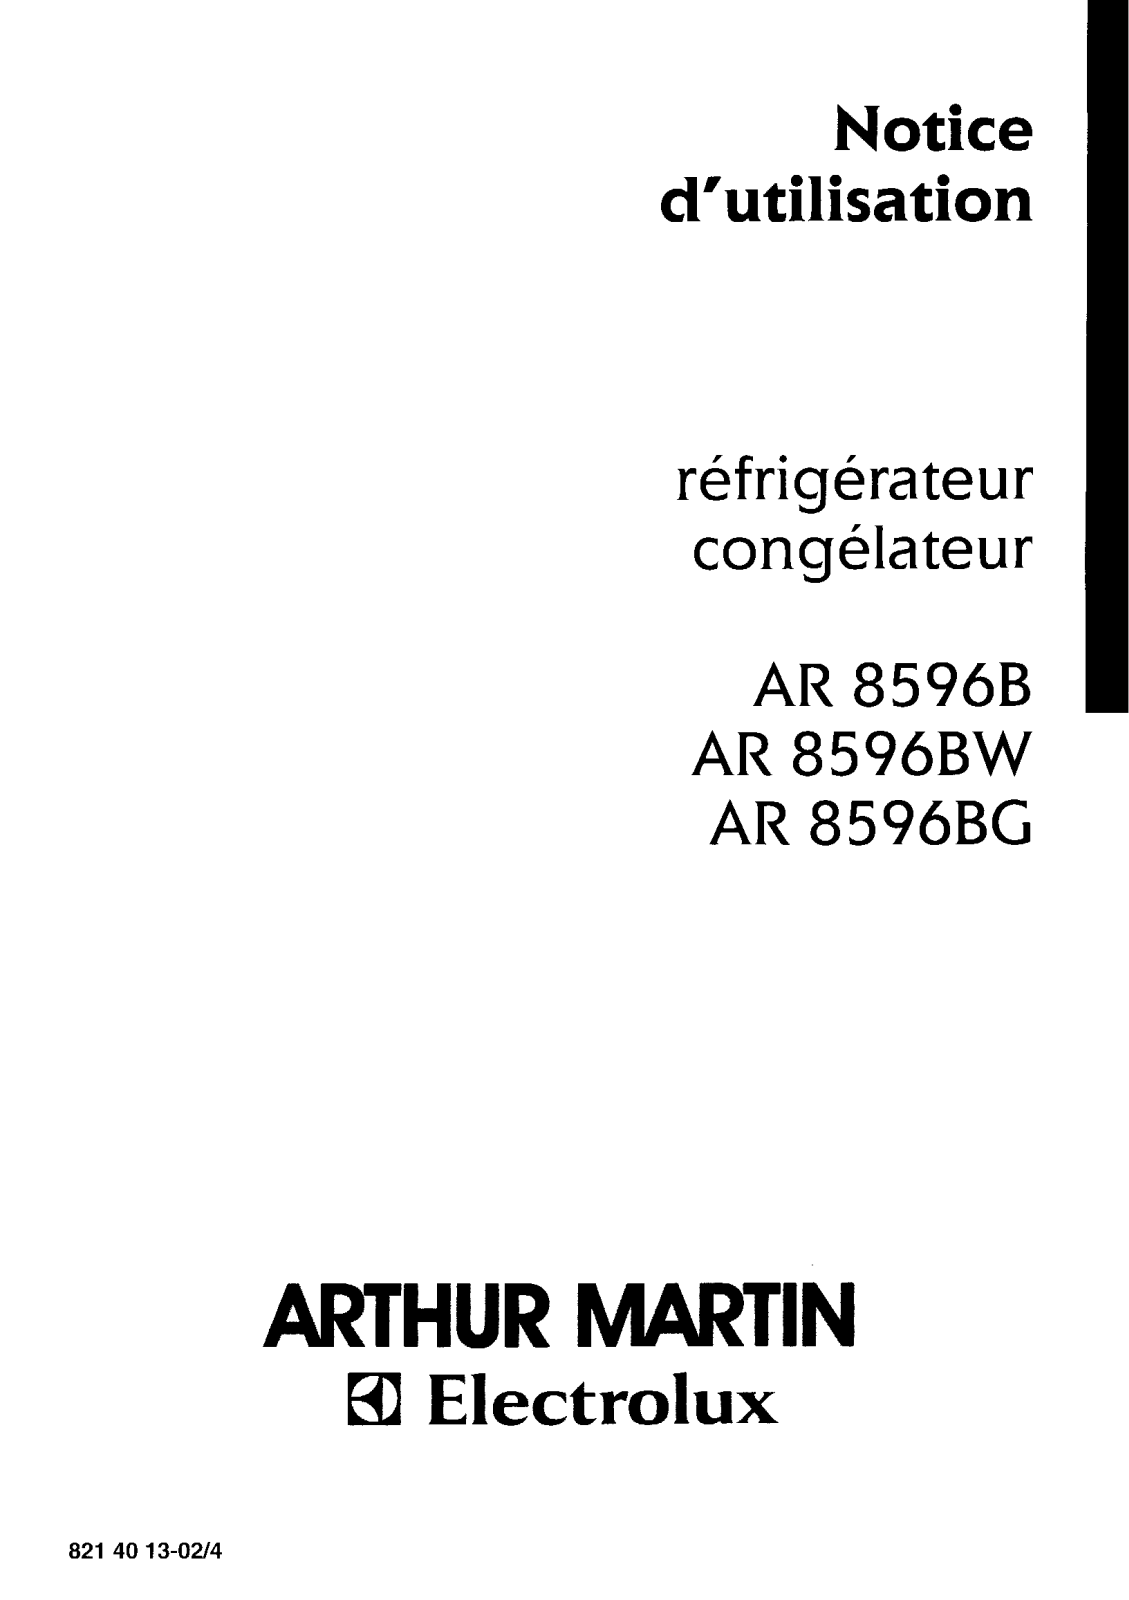 Arthur martin AR8596BW, AR8596BG, AR8596B User Manual